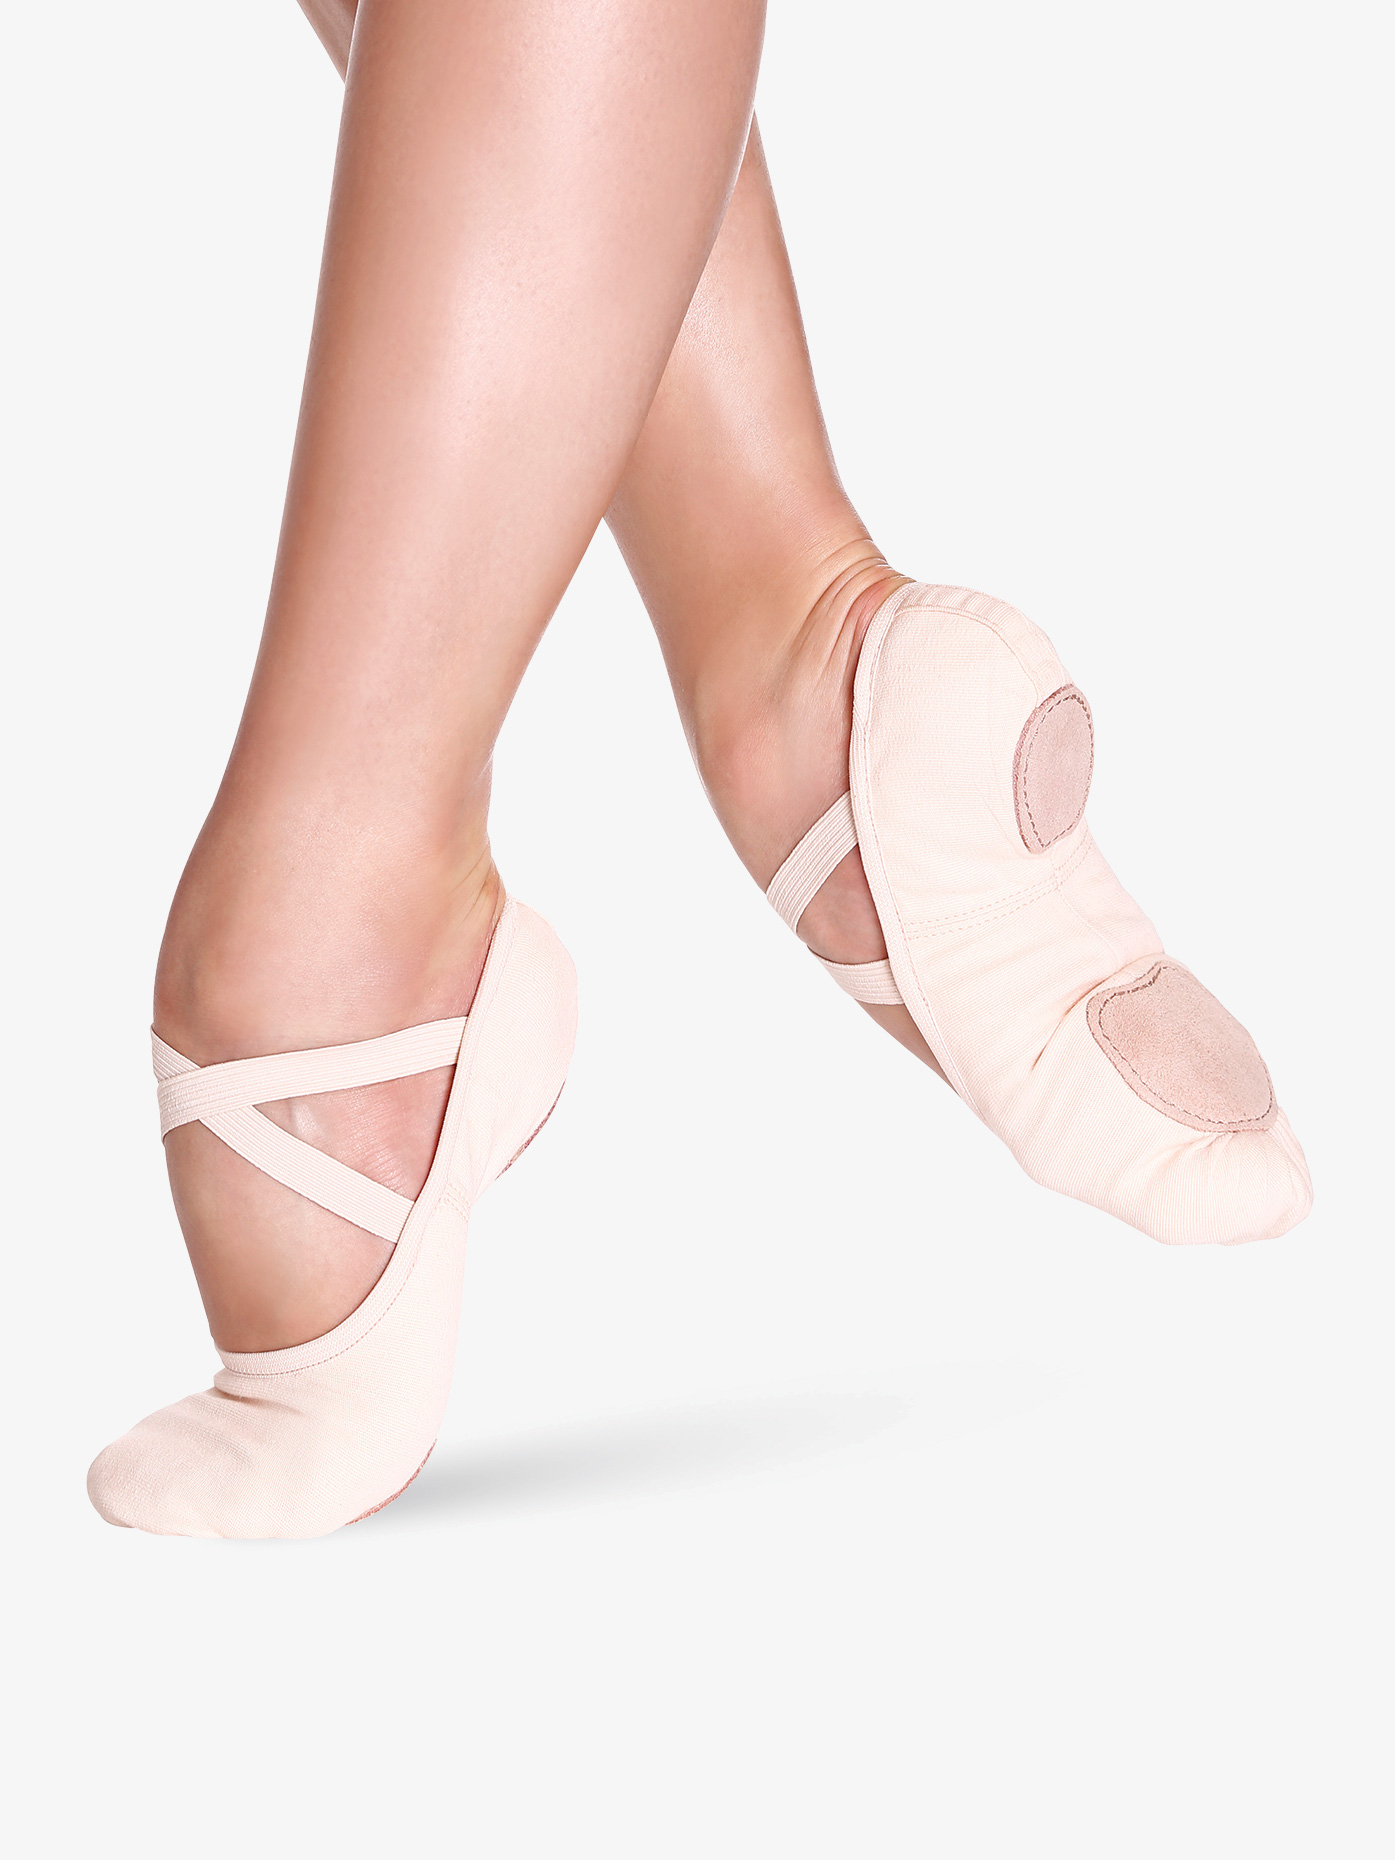 Kids Adult Soft Split Sole Ballet Dance Gymnastics Shoes Slippers Canvas